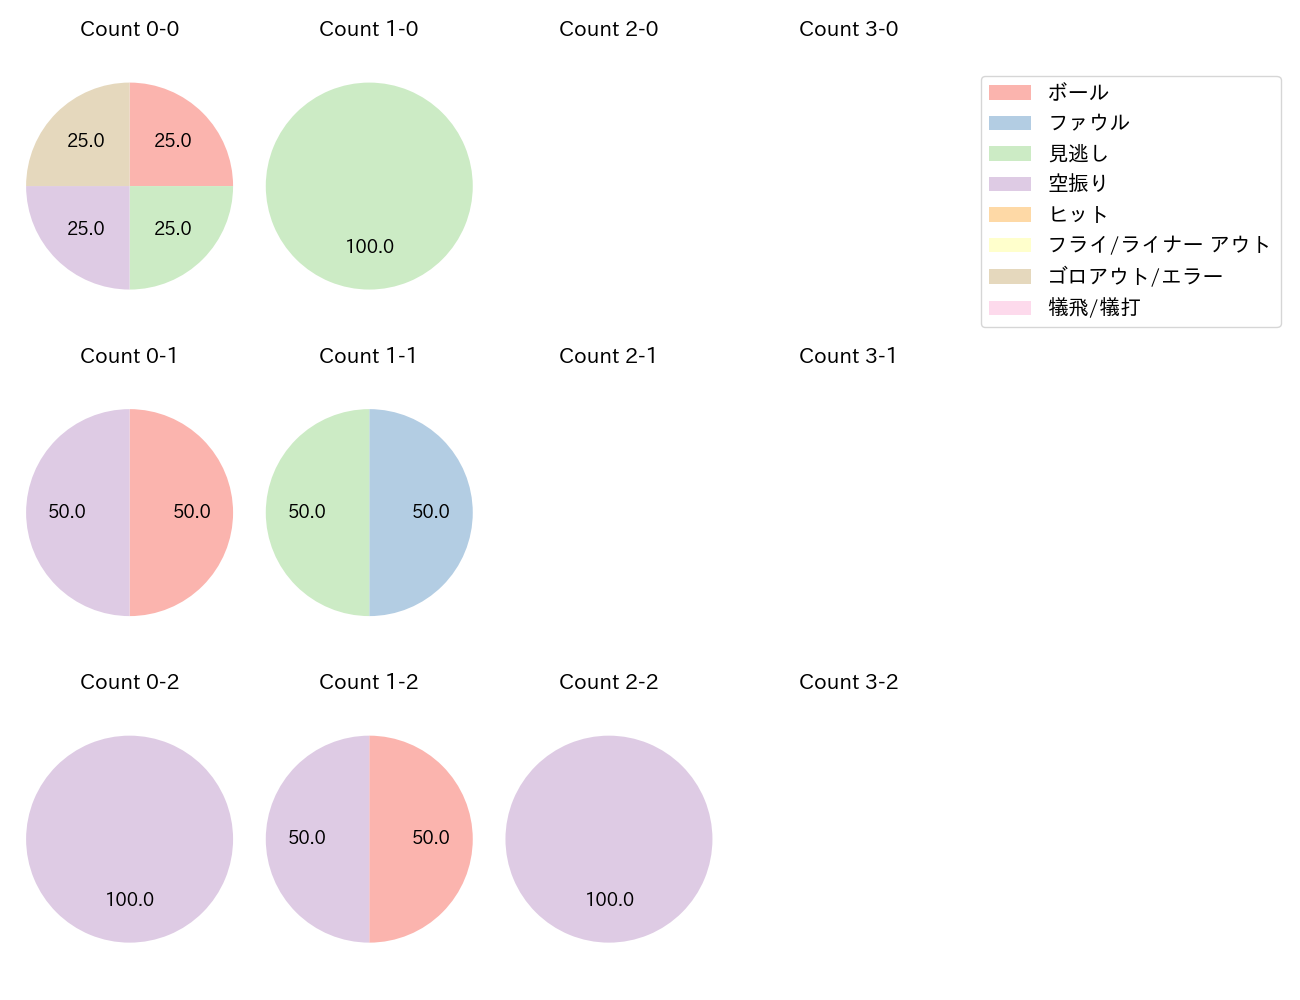 石川 柊太の球数分布(2022年5月)